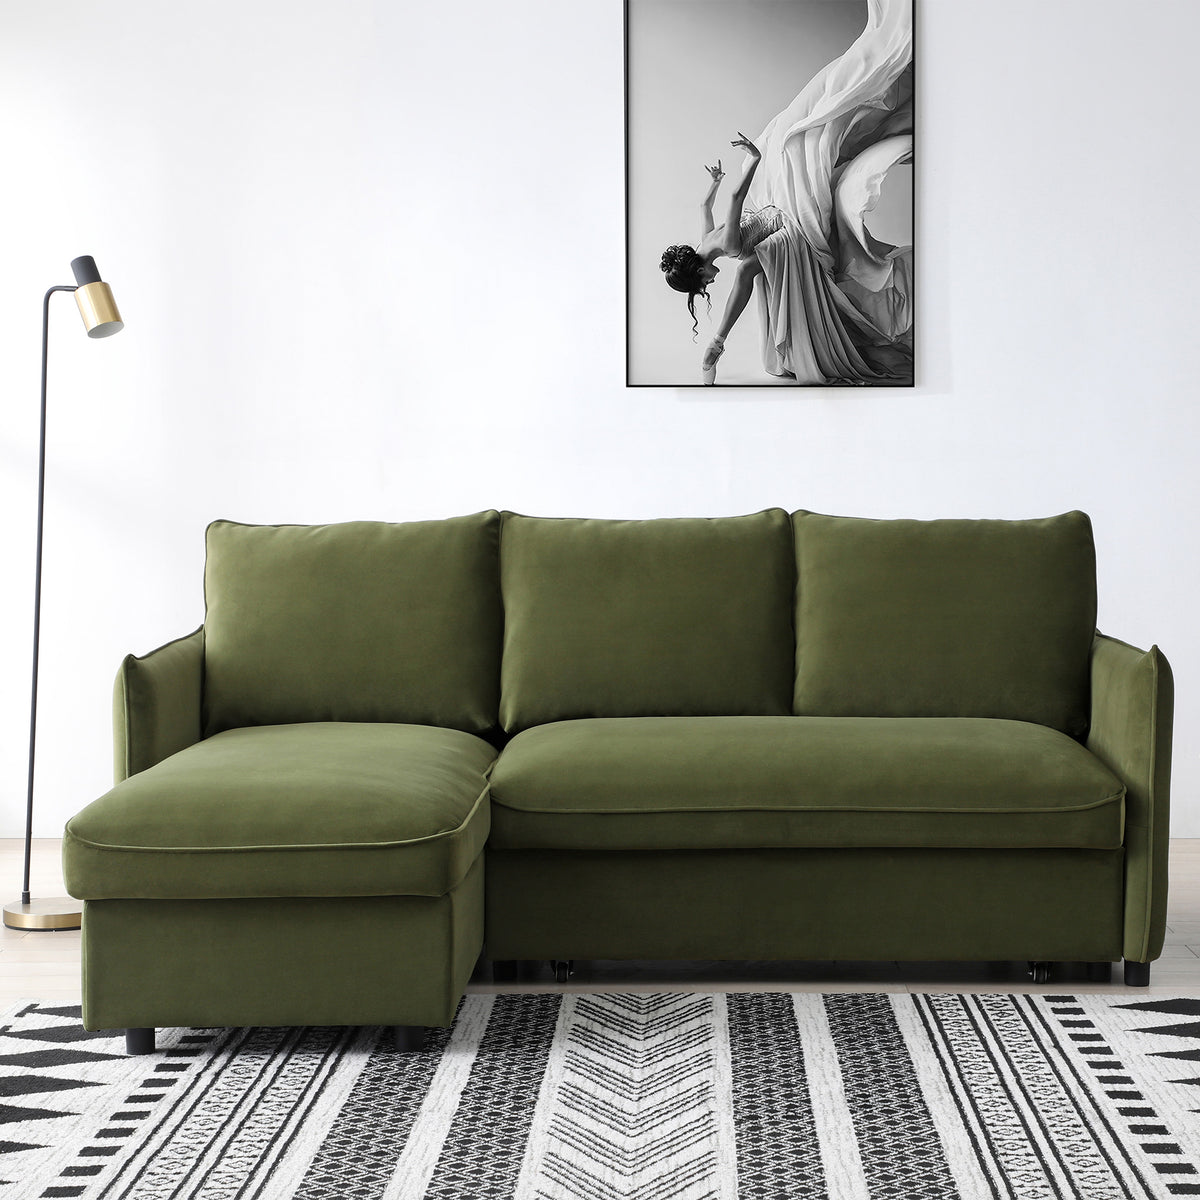 Thalia Olive Green Velvet 3 Seater Corner Chaise Sofa Bed for Living Room